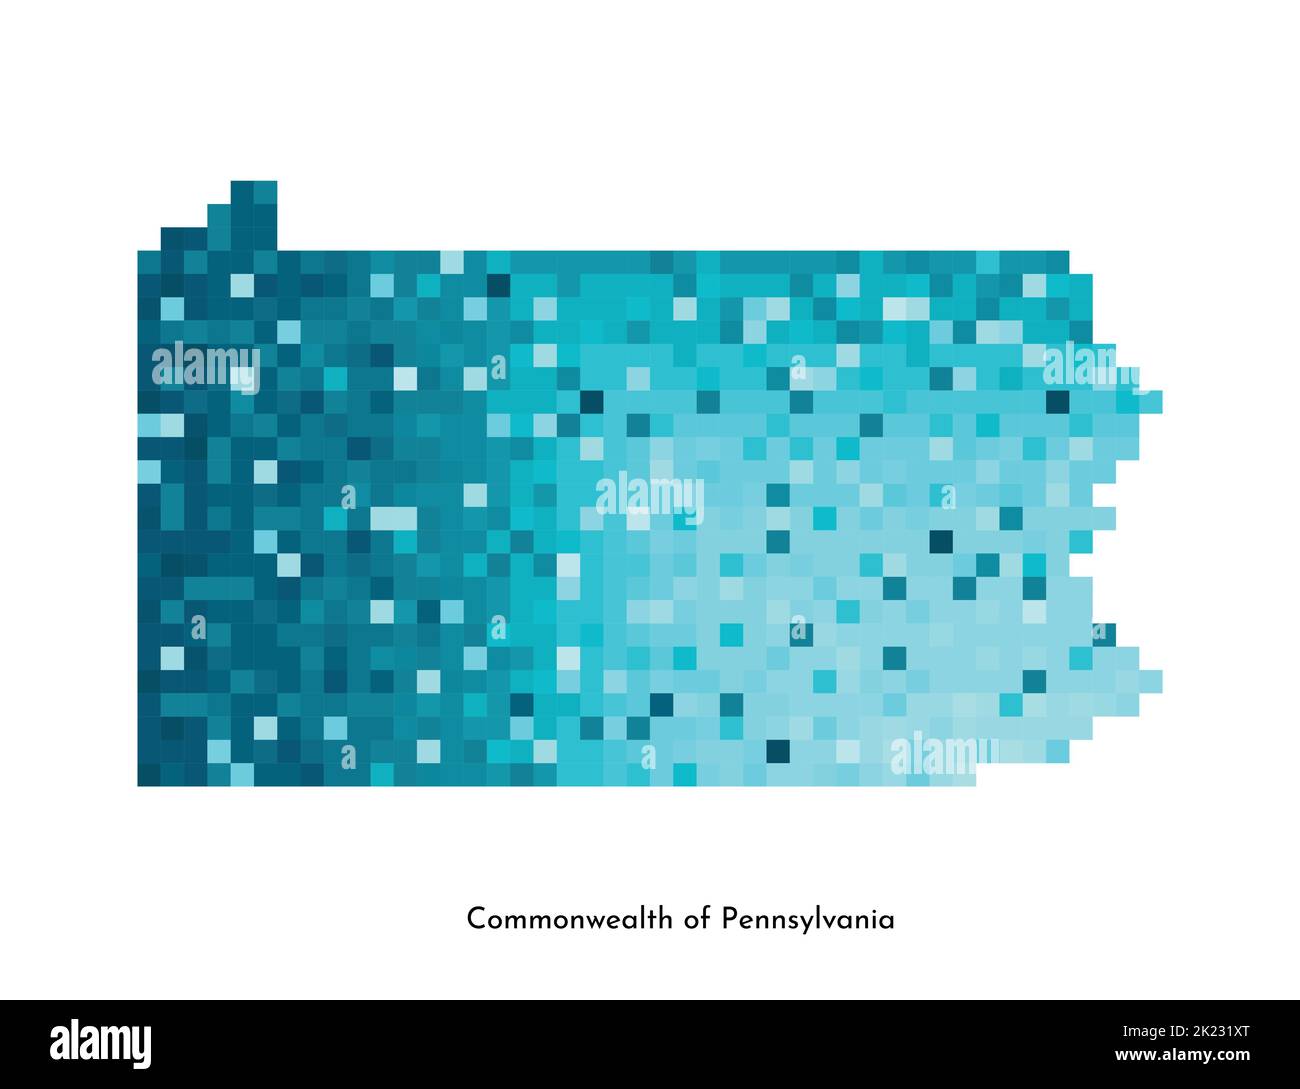 Vektor isolierte geometrische Illustration mit eisig blauen USA Staat - Commonwealth of Pennsylvania Karte. Pixel-Art-Stil für NFT-Vorlage. Einfache bunte l Stock Vektor